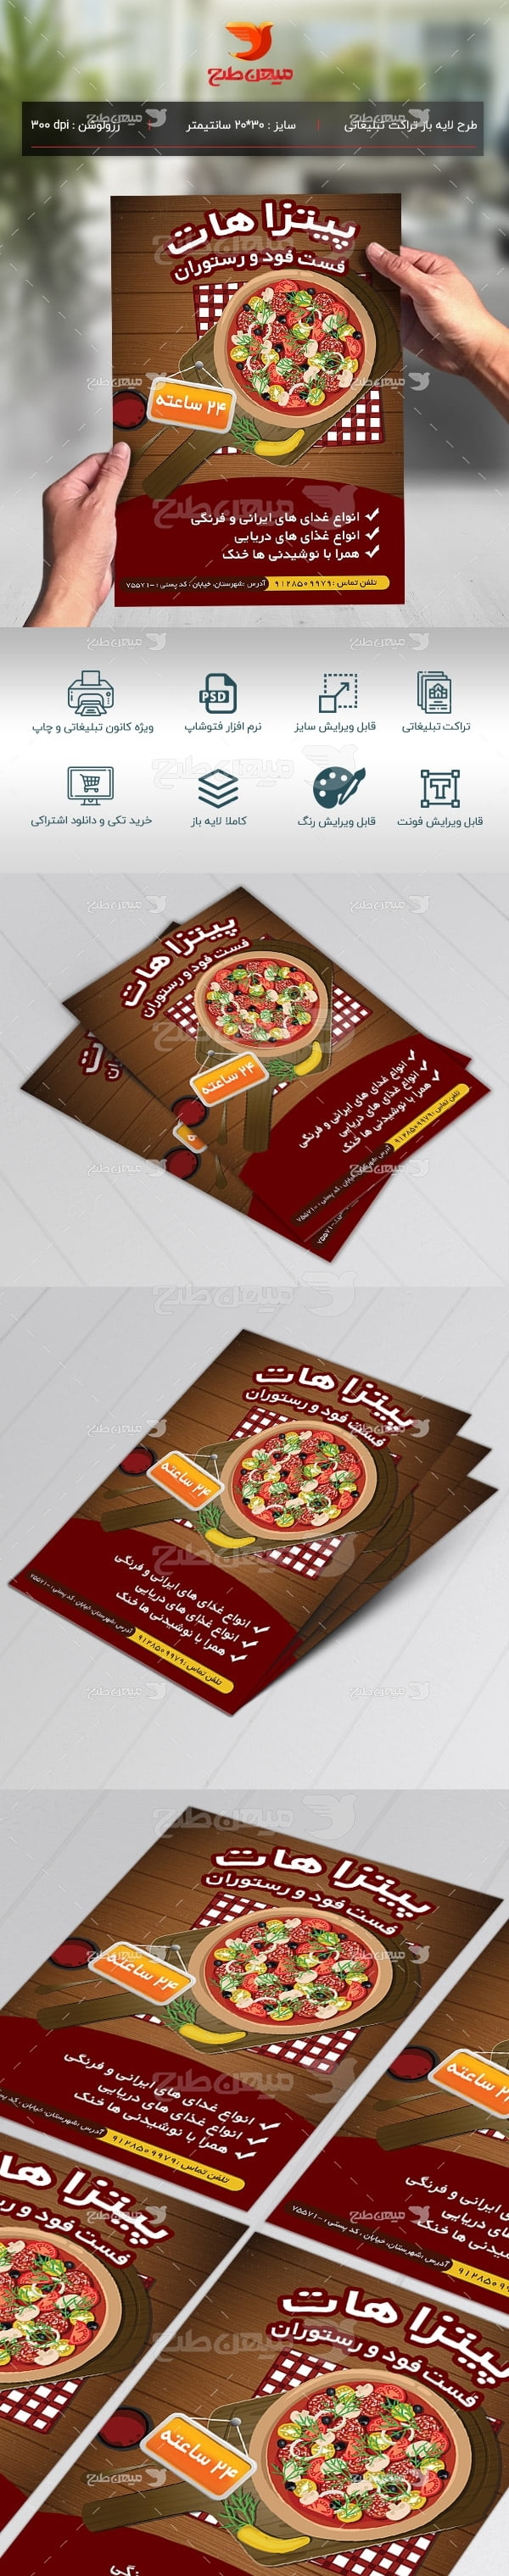 طرح لایه باز تراکت تبلیغاتی پیتزا هات